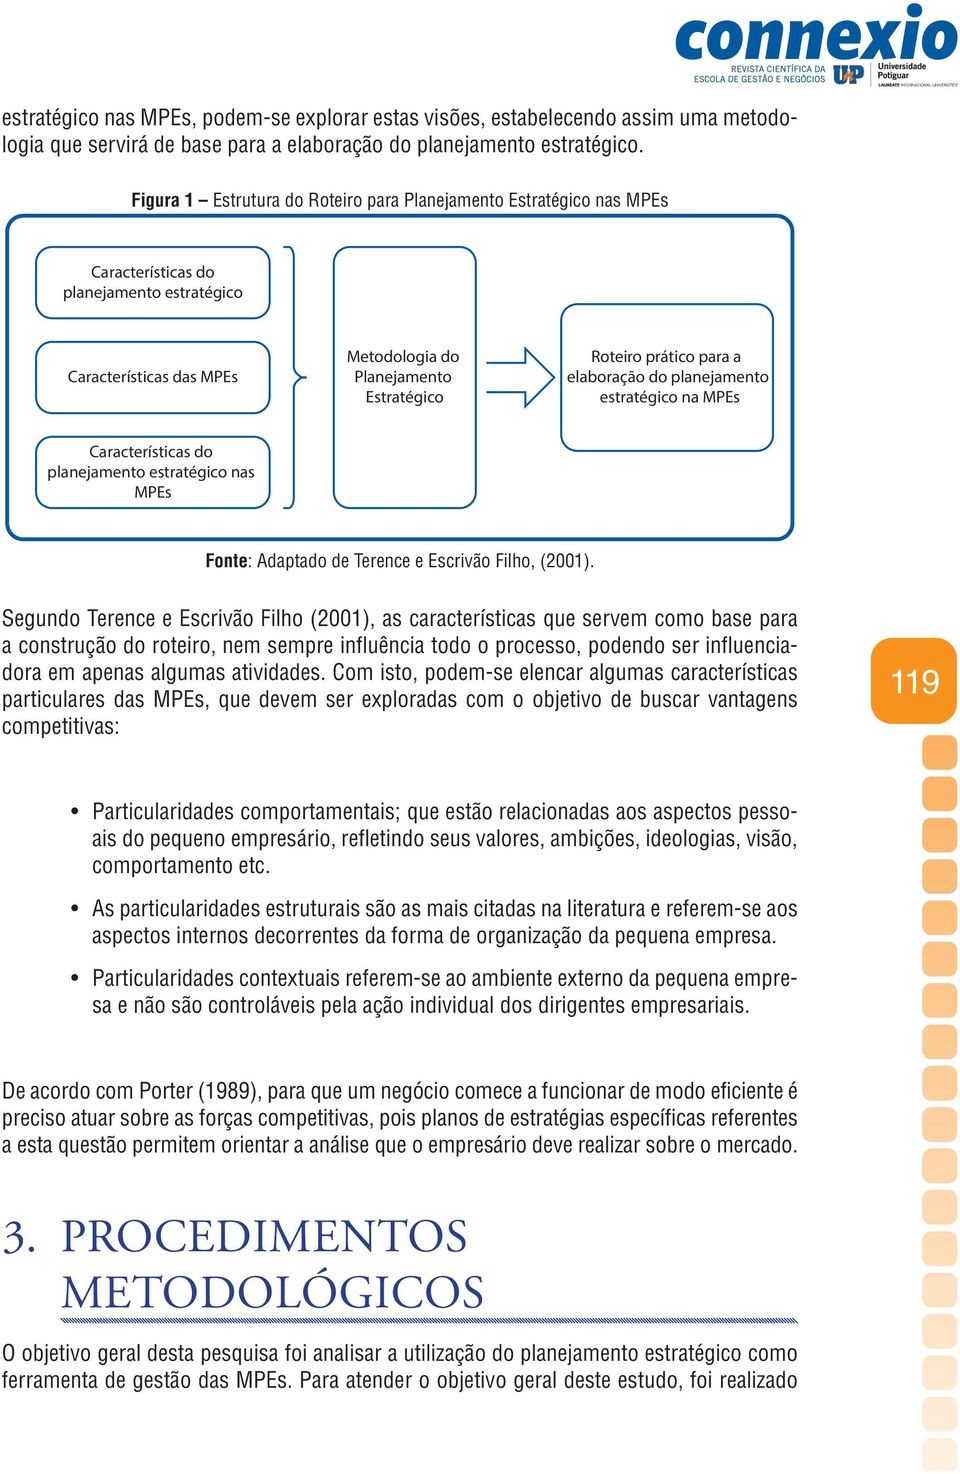 a elaboração do planejamento estratégico na MPEs Características do planejamento estratégico nas MPEs Fonte: Adaptado de Terence e Escrivão Filho, (2001).